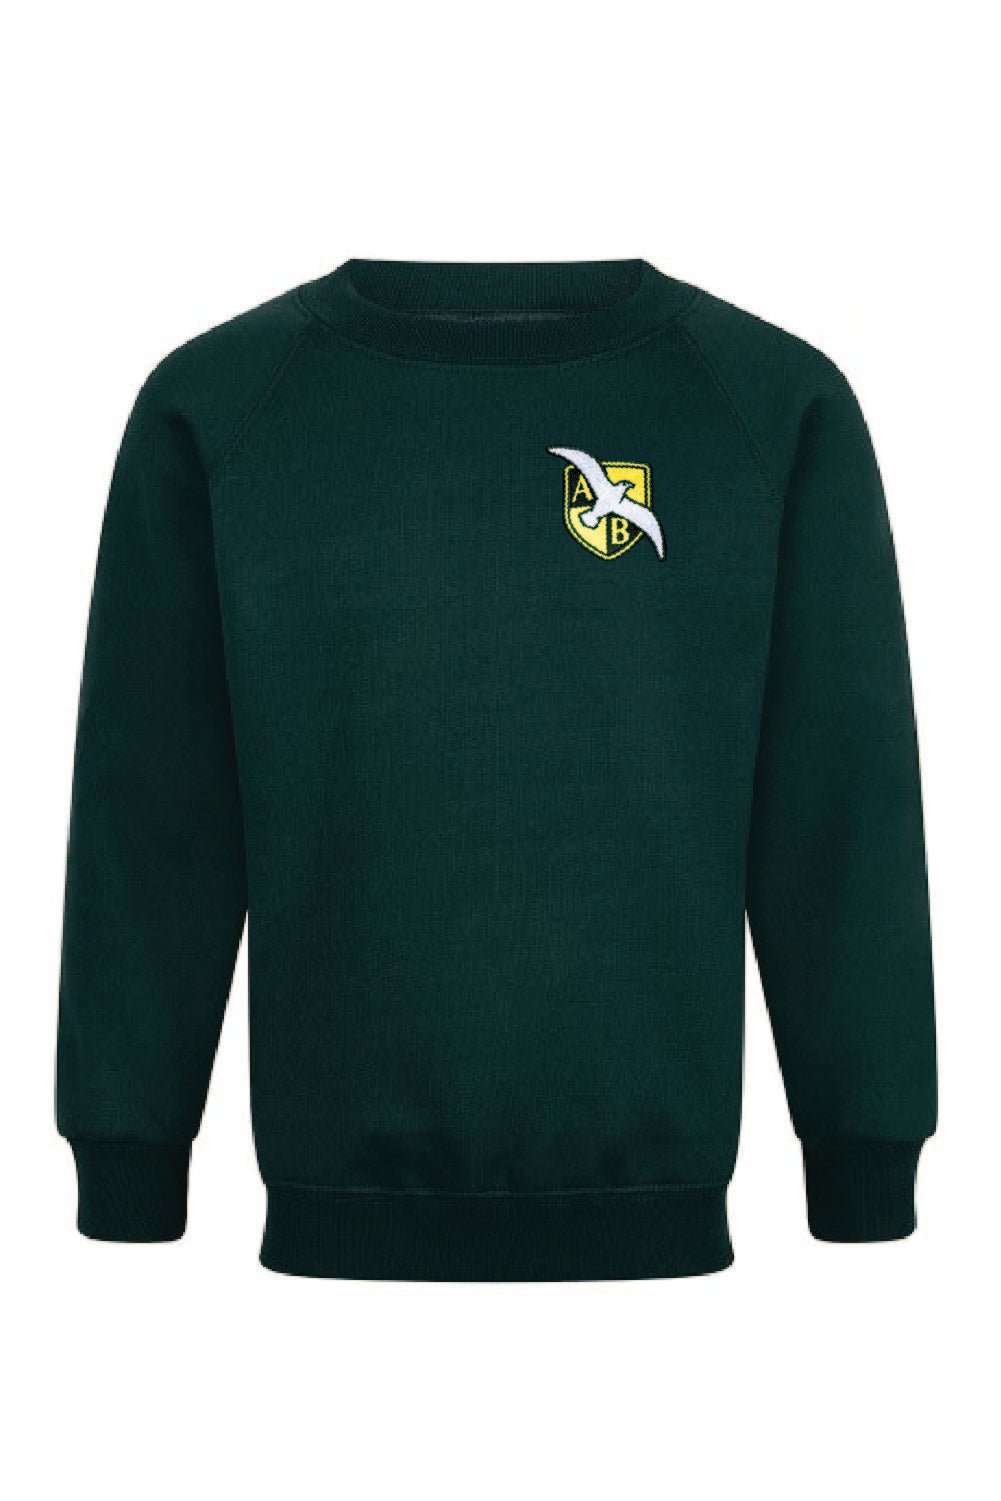 Arthur Bugler School Sweatshirt Jumper - Uniformwise Schoolwear